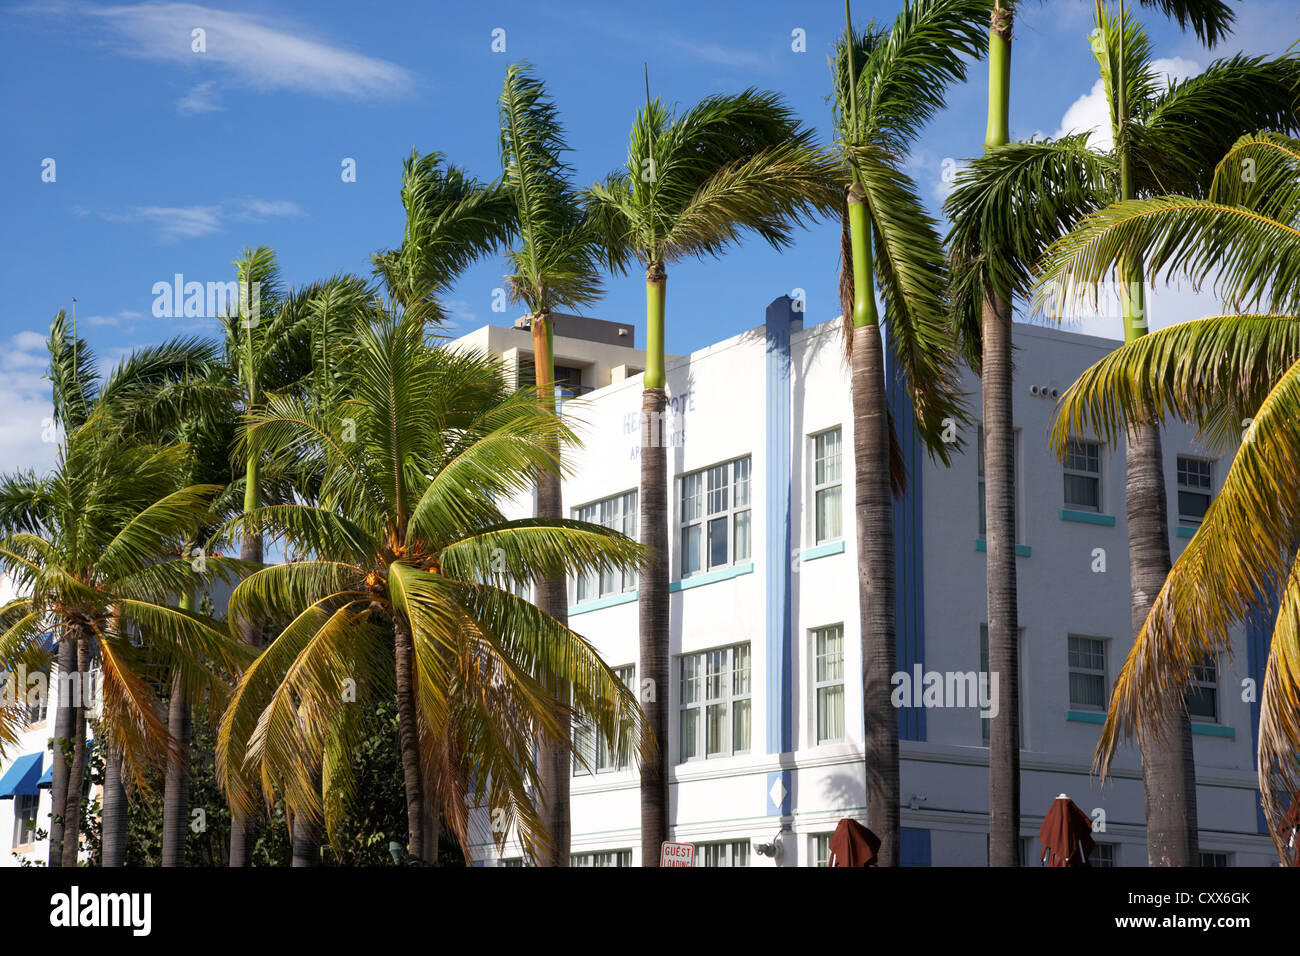 Palmiers dans le quartier historique art déco Ocean drive Miami South beach floride usa Banque D'Images